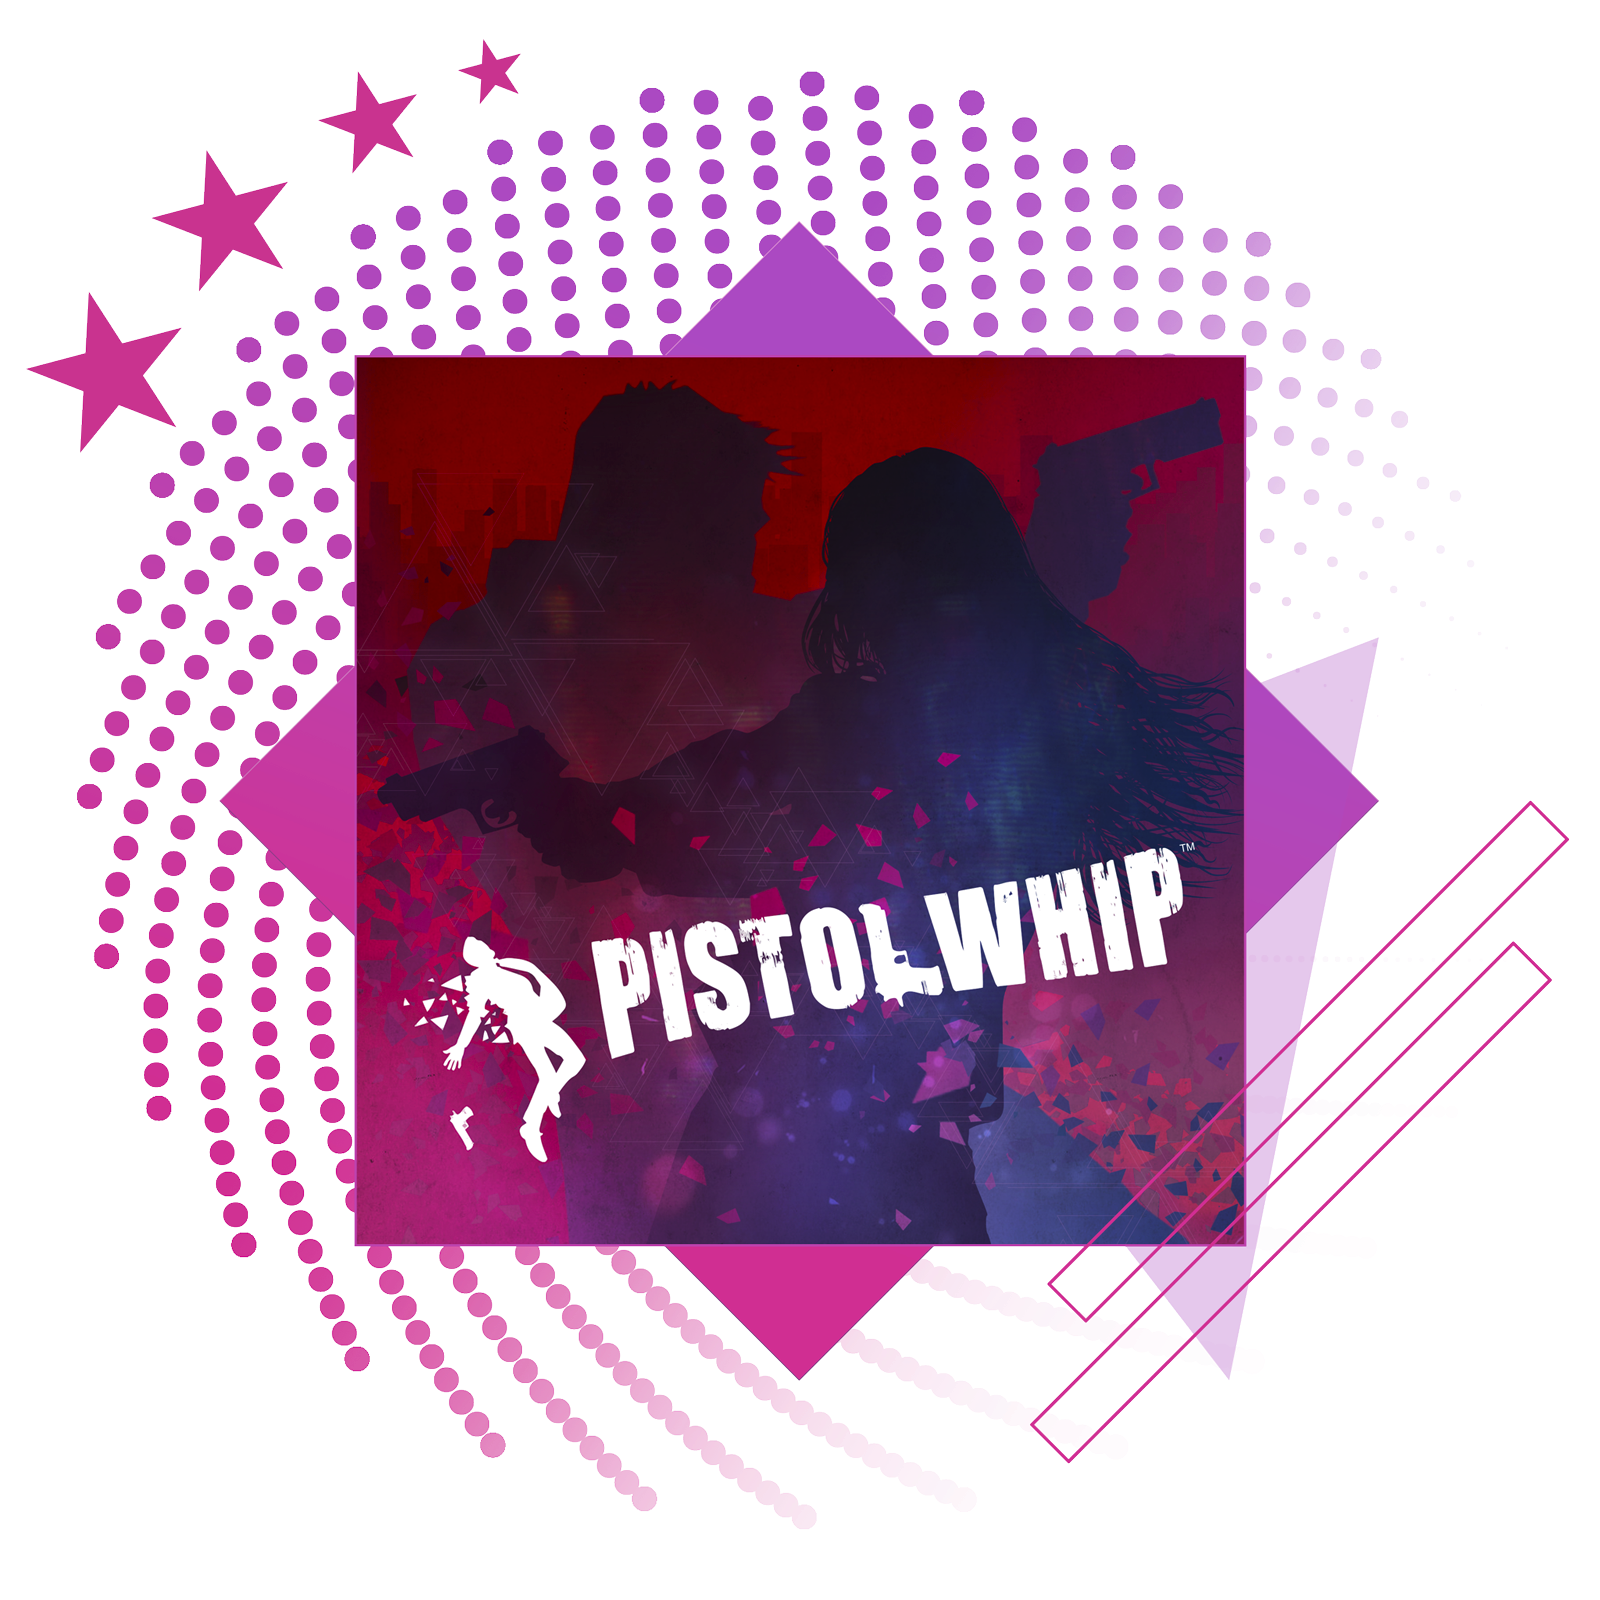 Najlepšie rytmické hry – obrázok s kľúčovou grafikou z hry Pistol Whip